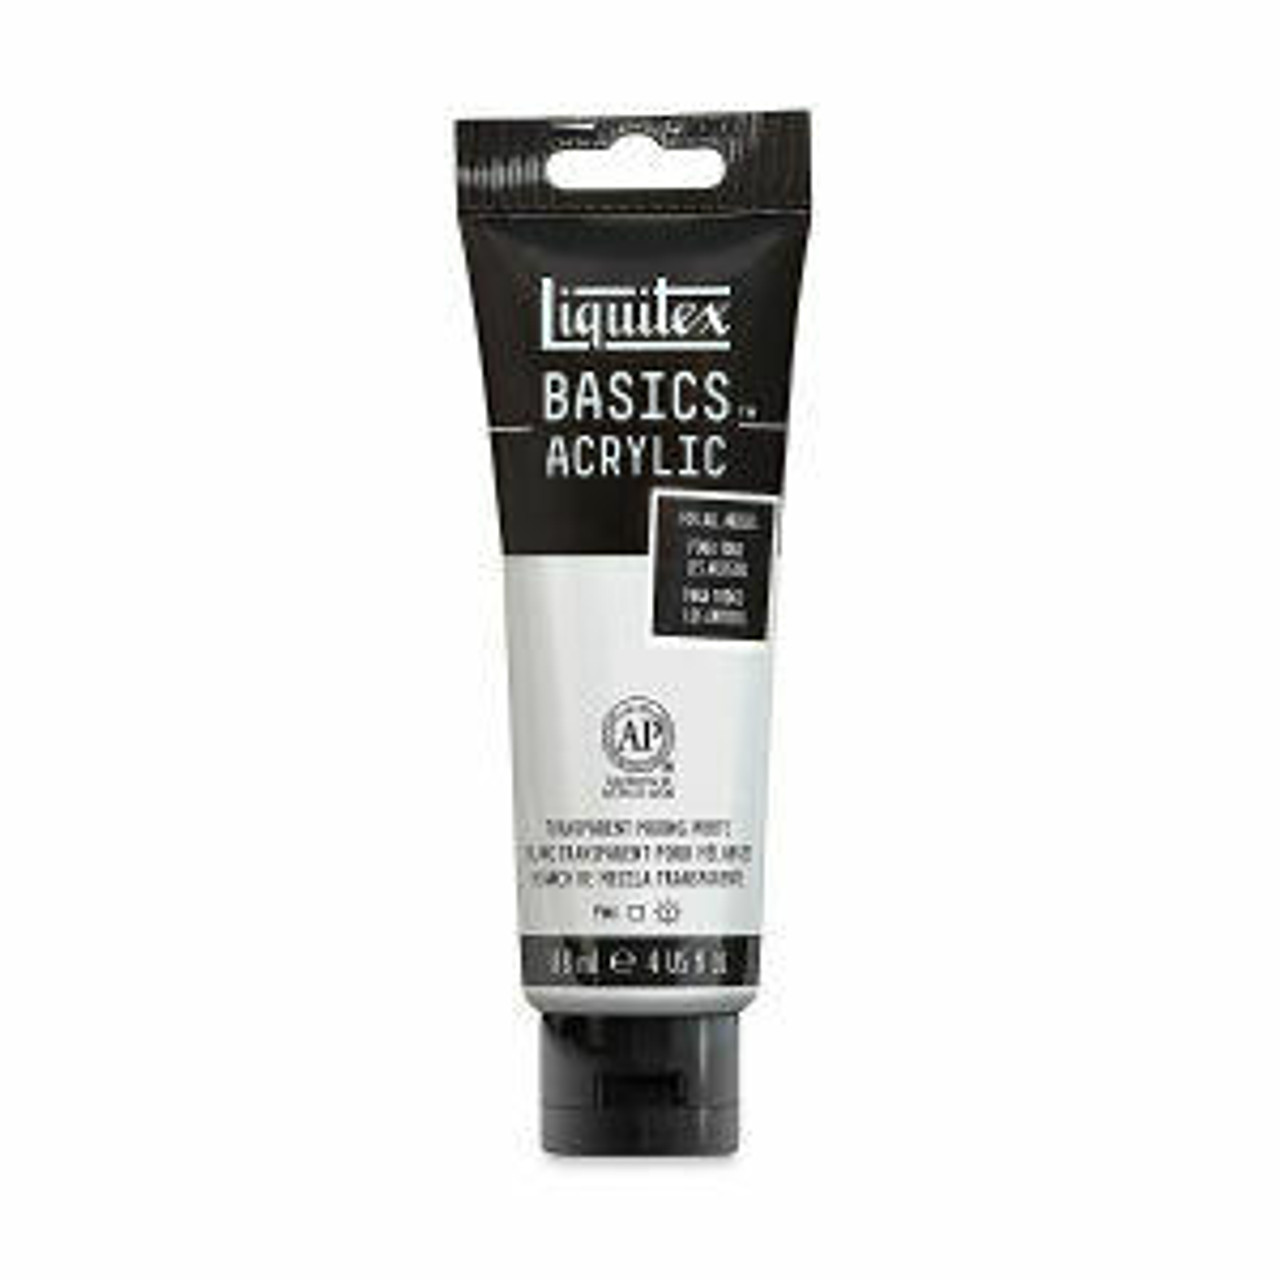 Liquitex Basics - Titanium White, 4 oz tube